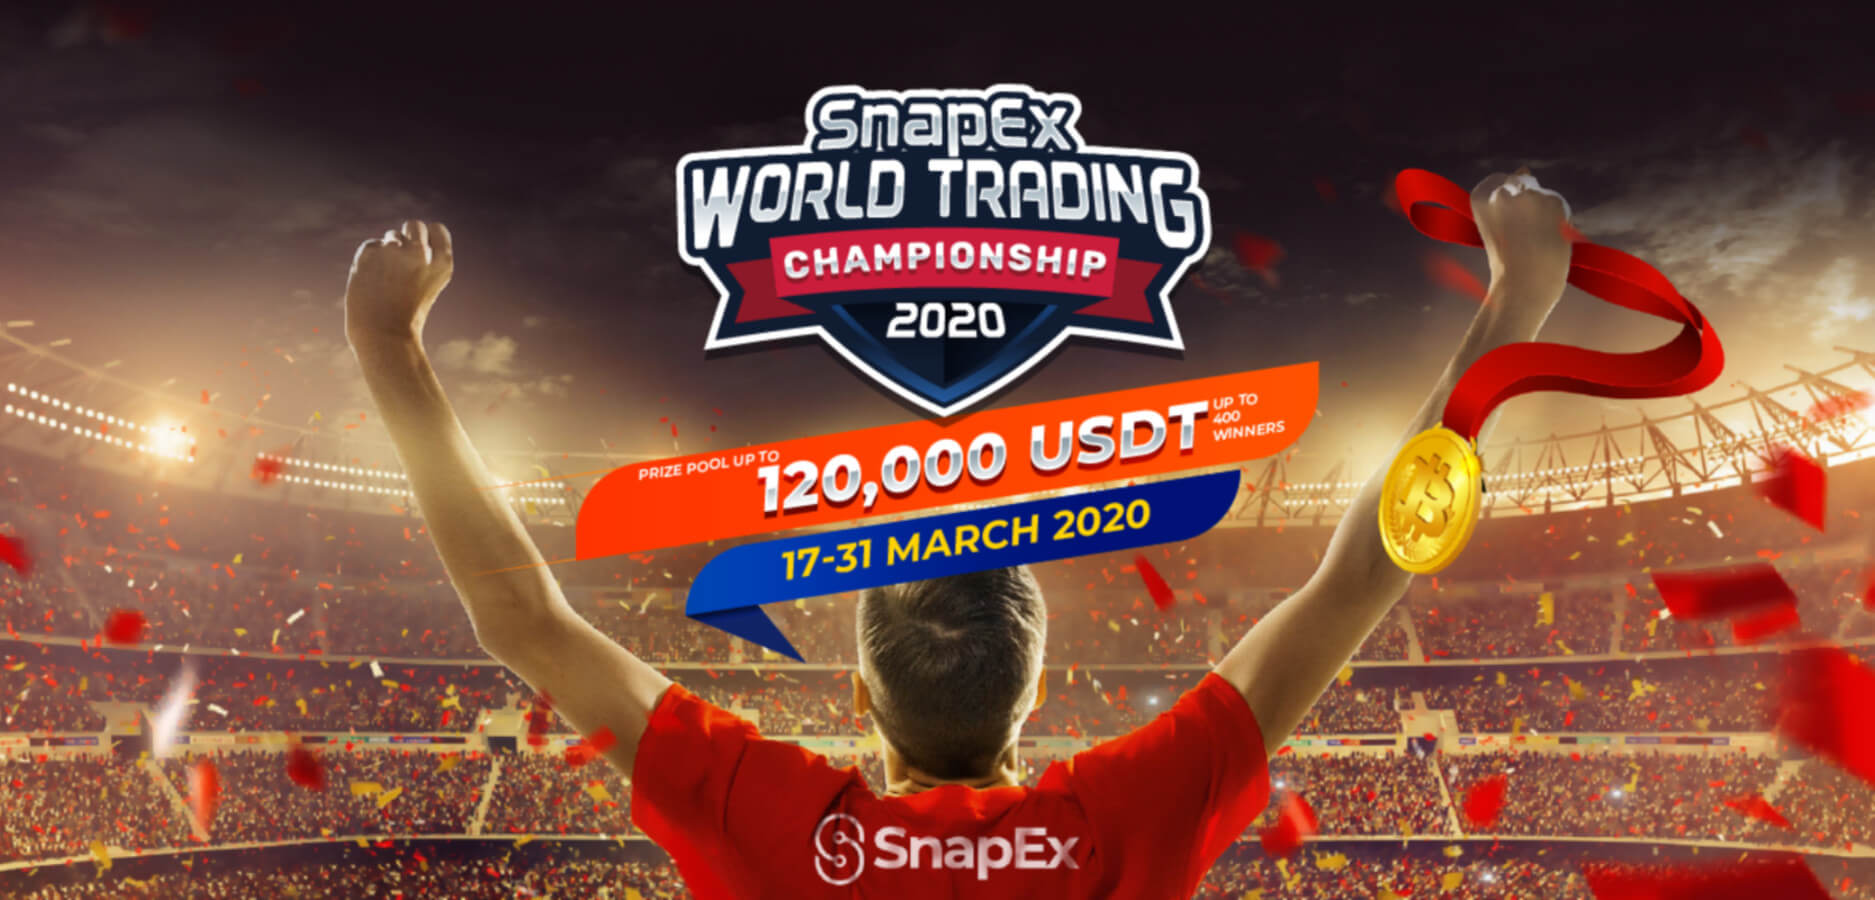 Конкурс крипто-трейдинга с участием до 400 победителей и призовым фондом в 120 000 USDT